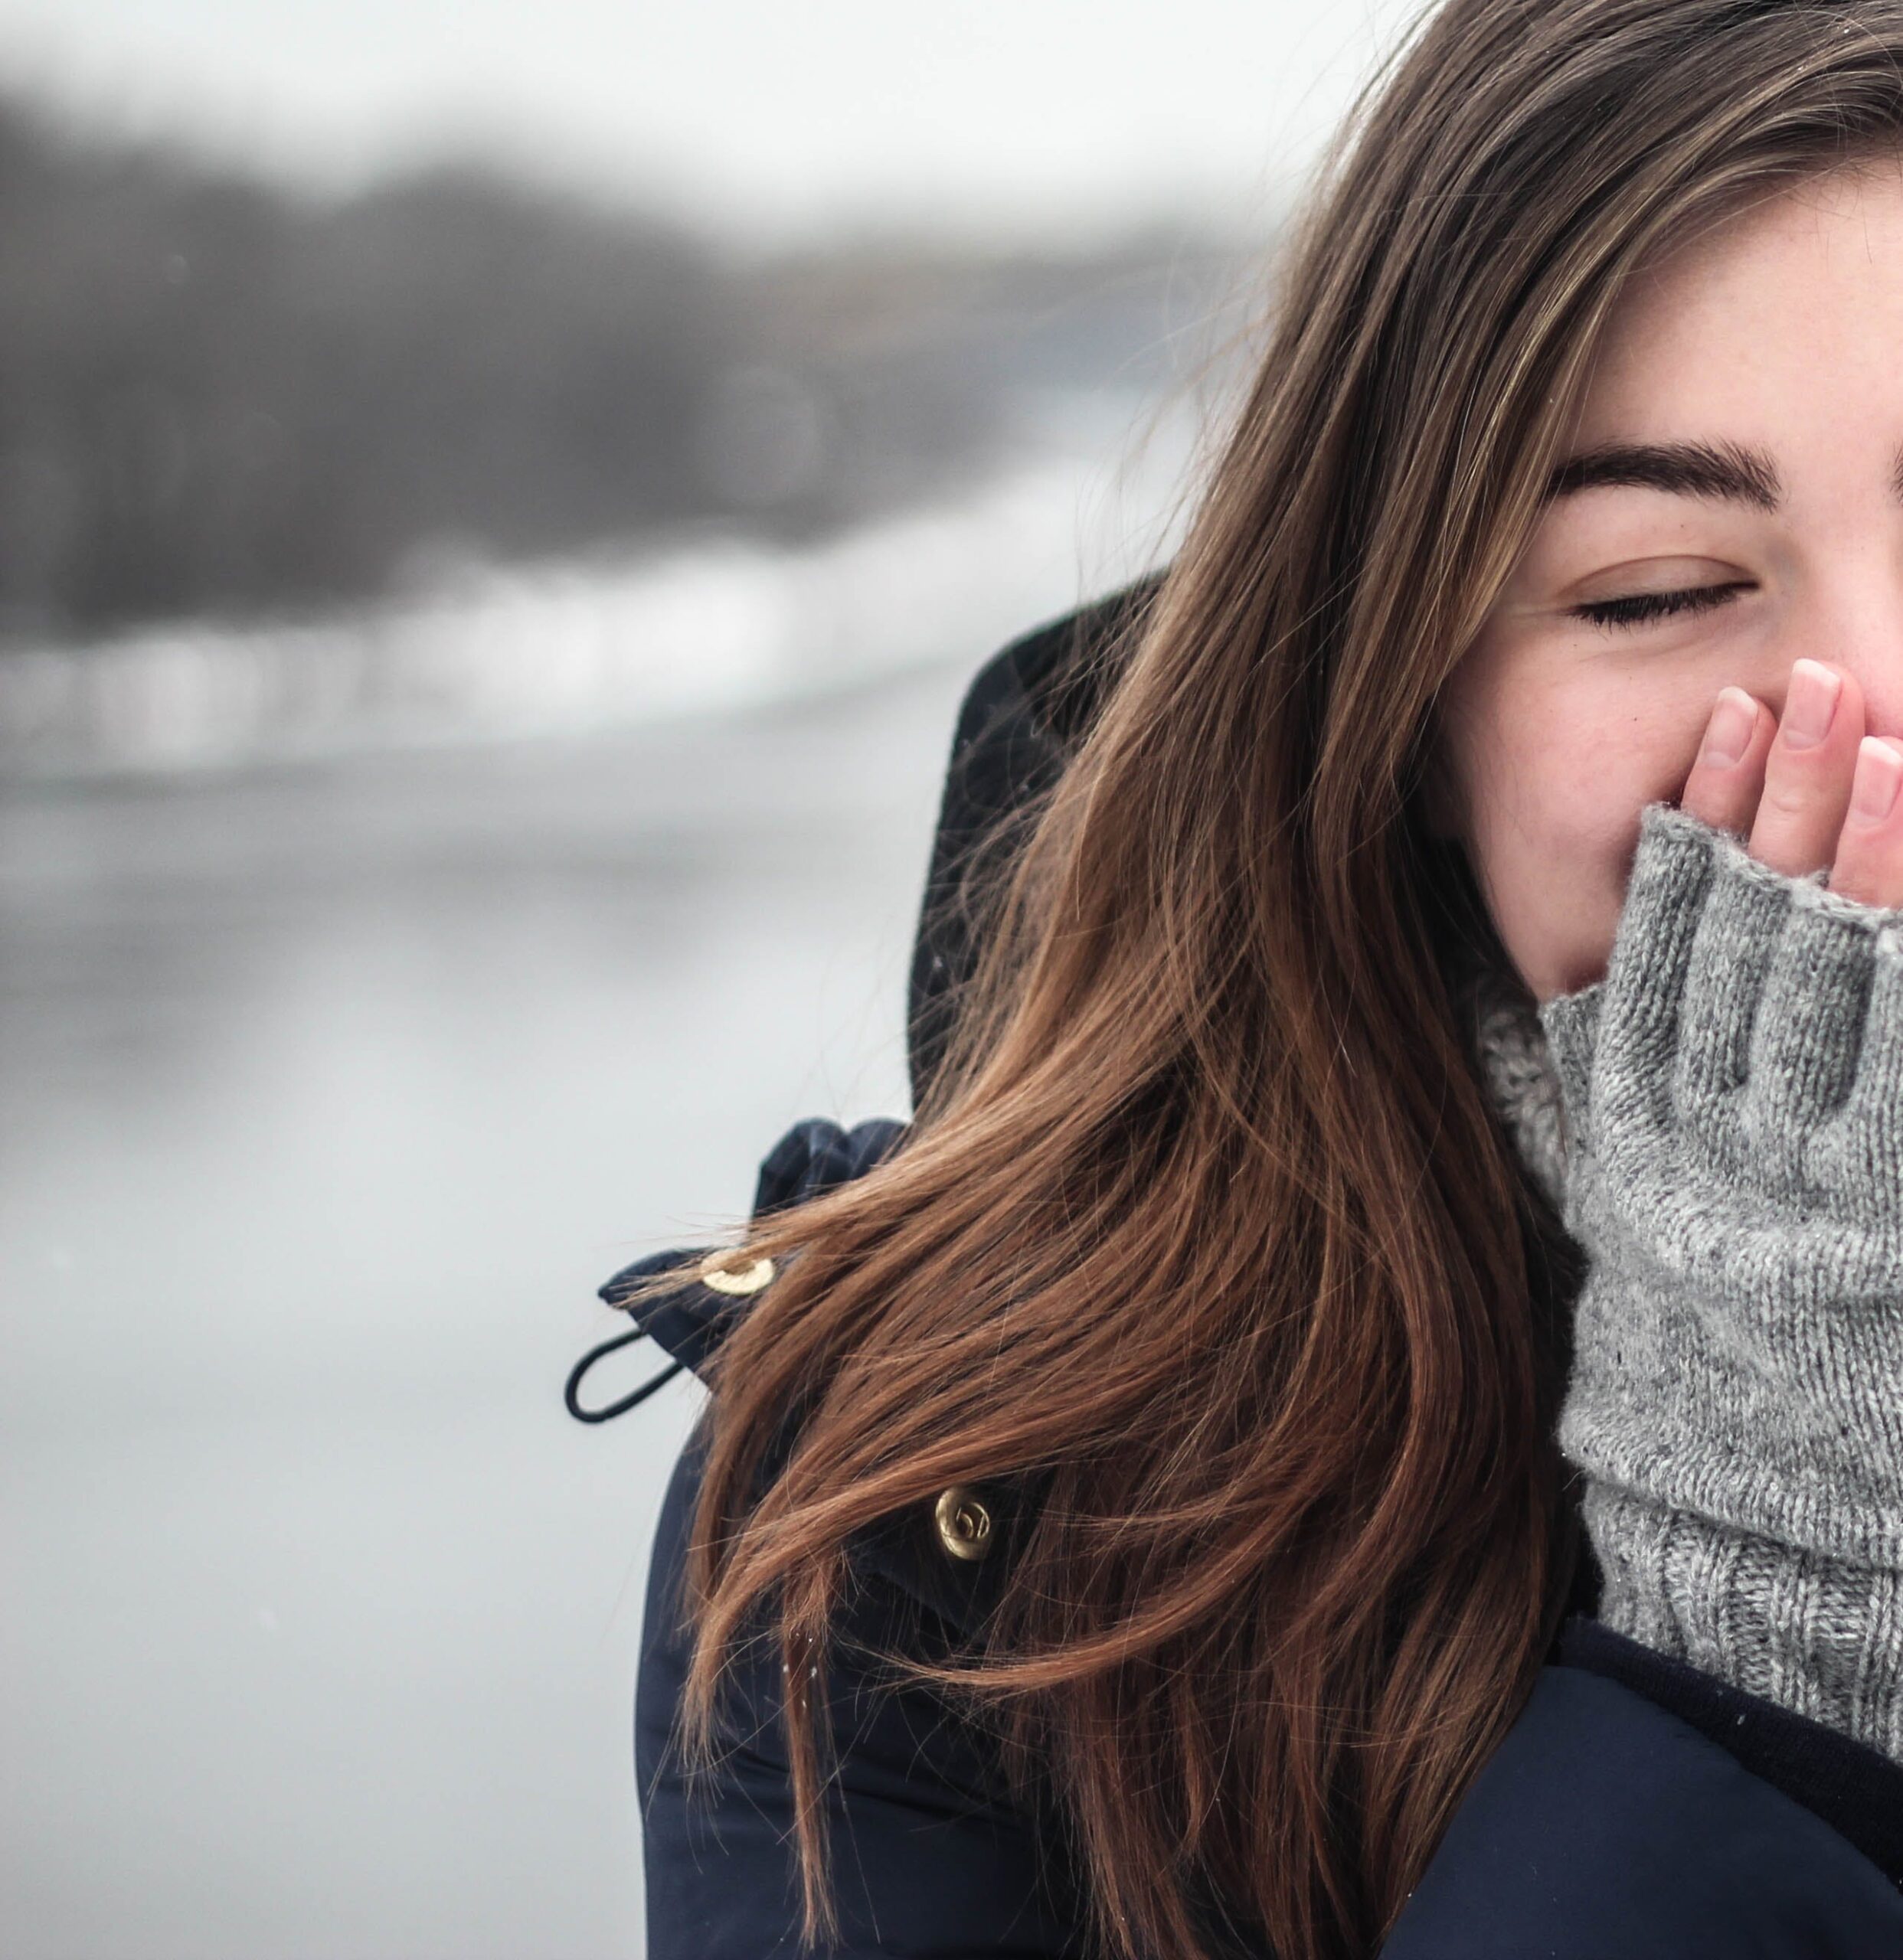 giovane donna vestita invernale con guanti forati sulle dita si riscalda le mani con la bocca